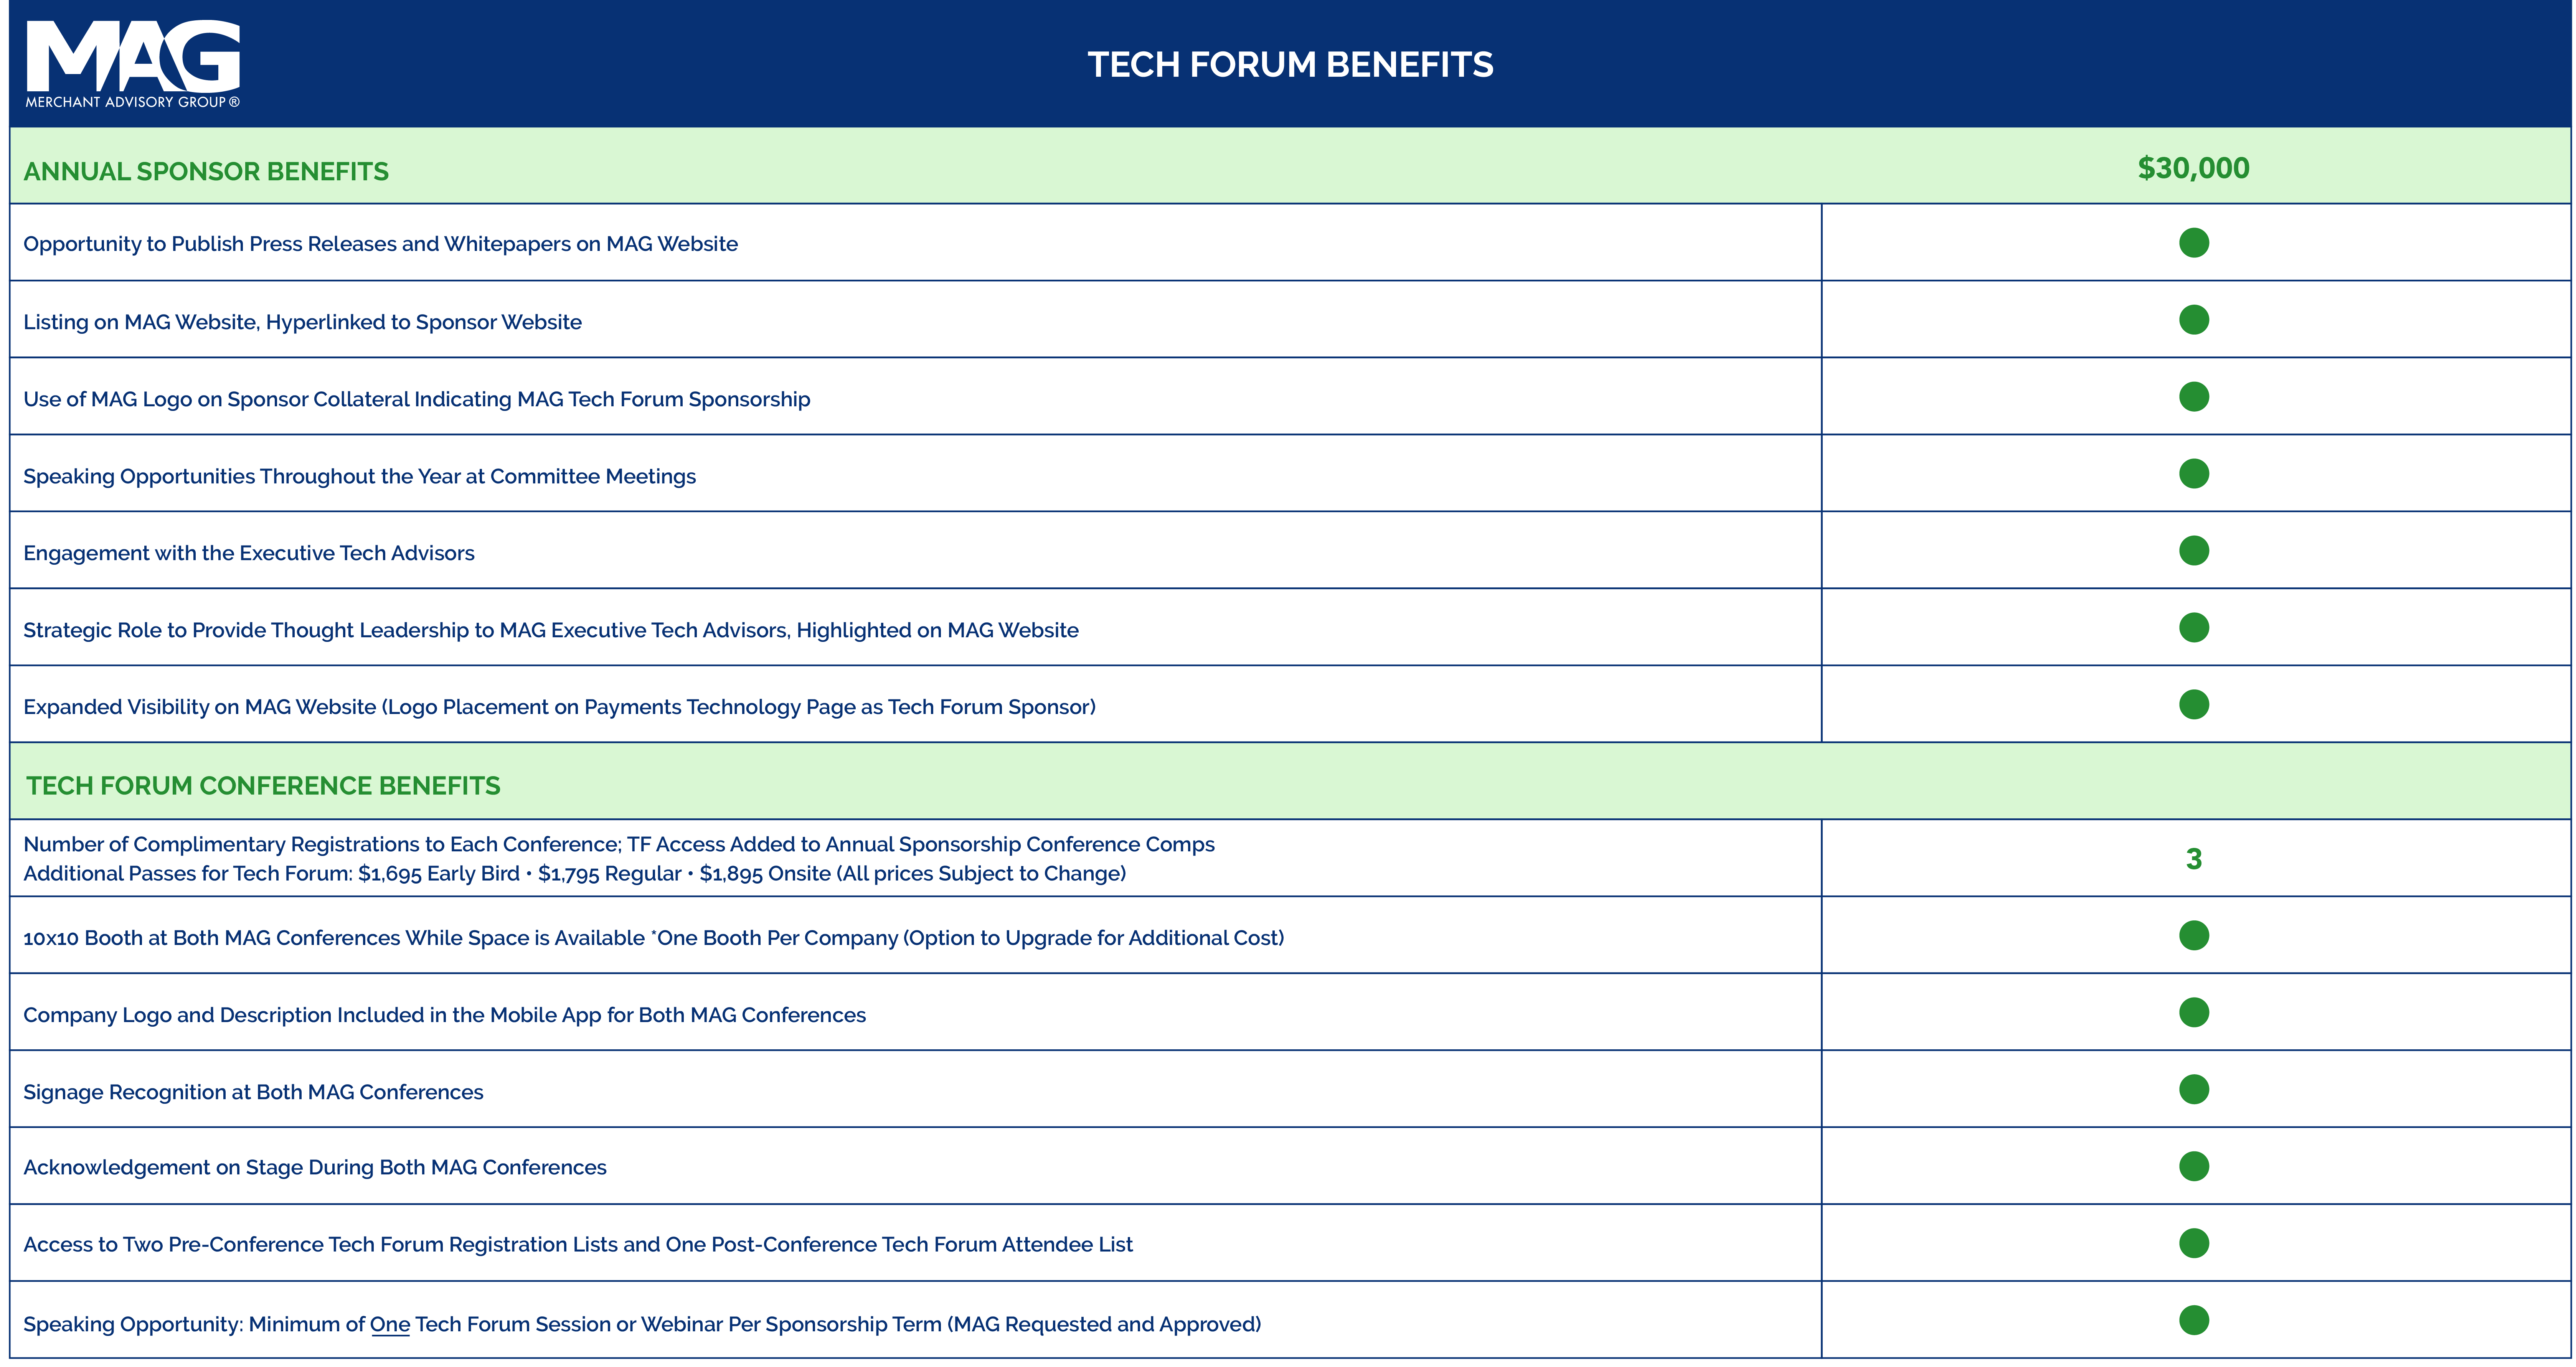 Tech Forum Sponsor Benefits chart